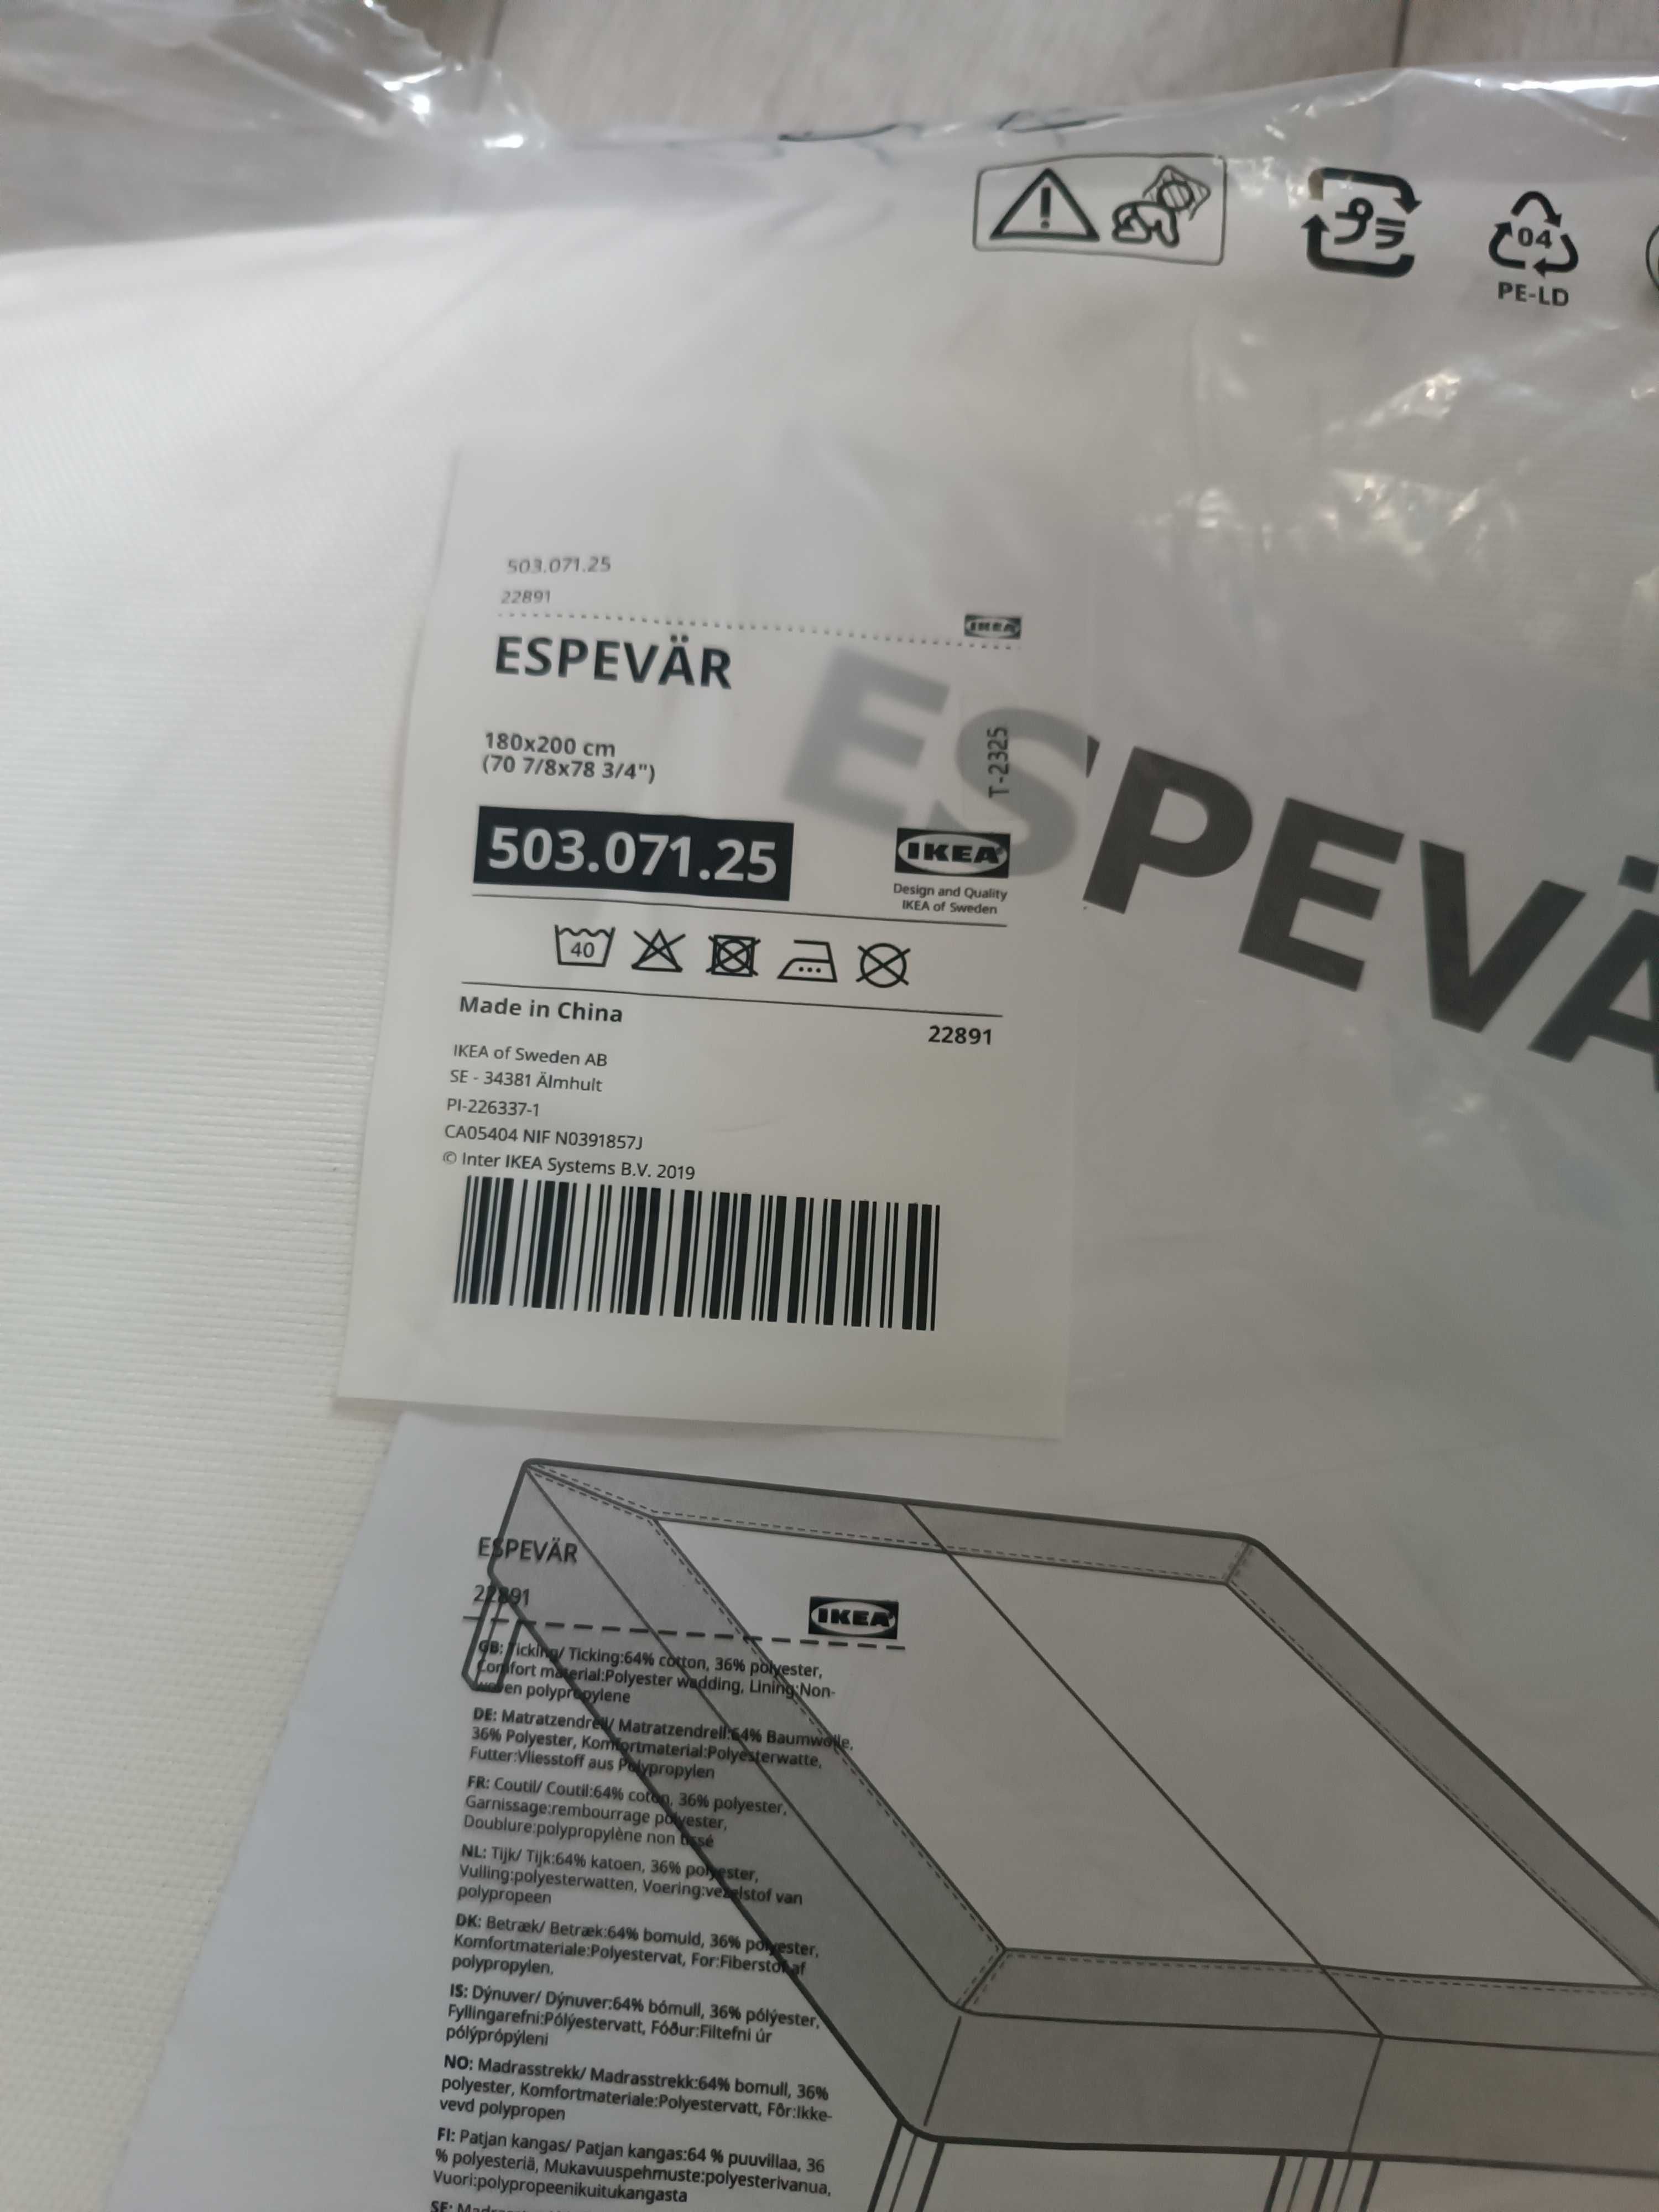 Pokrowiec espevar biały Ikea 180 200 materac